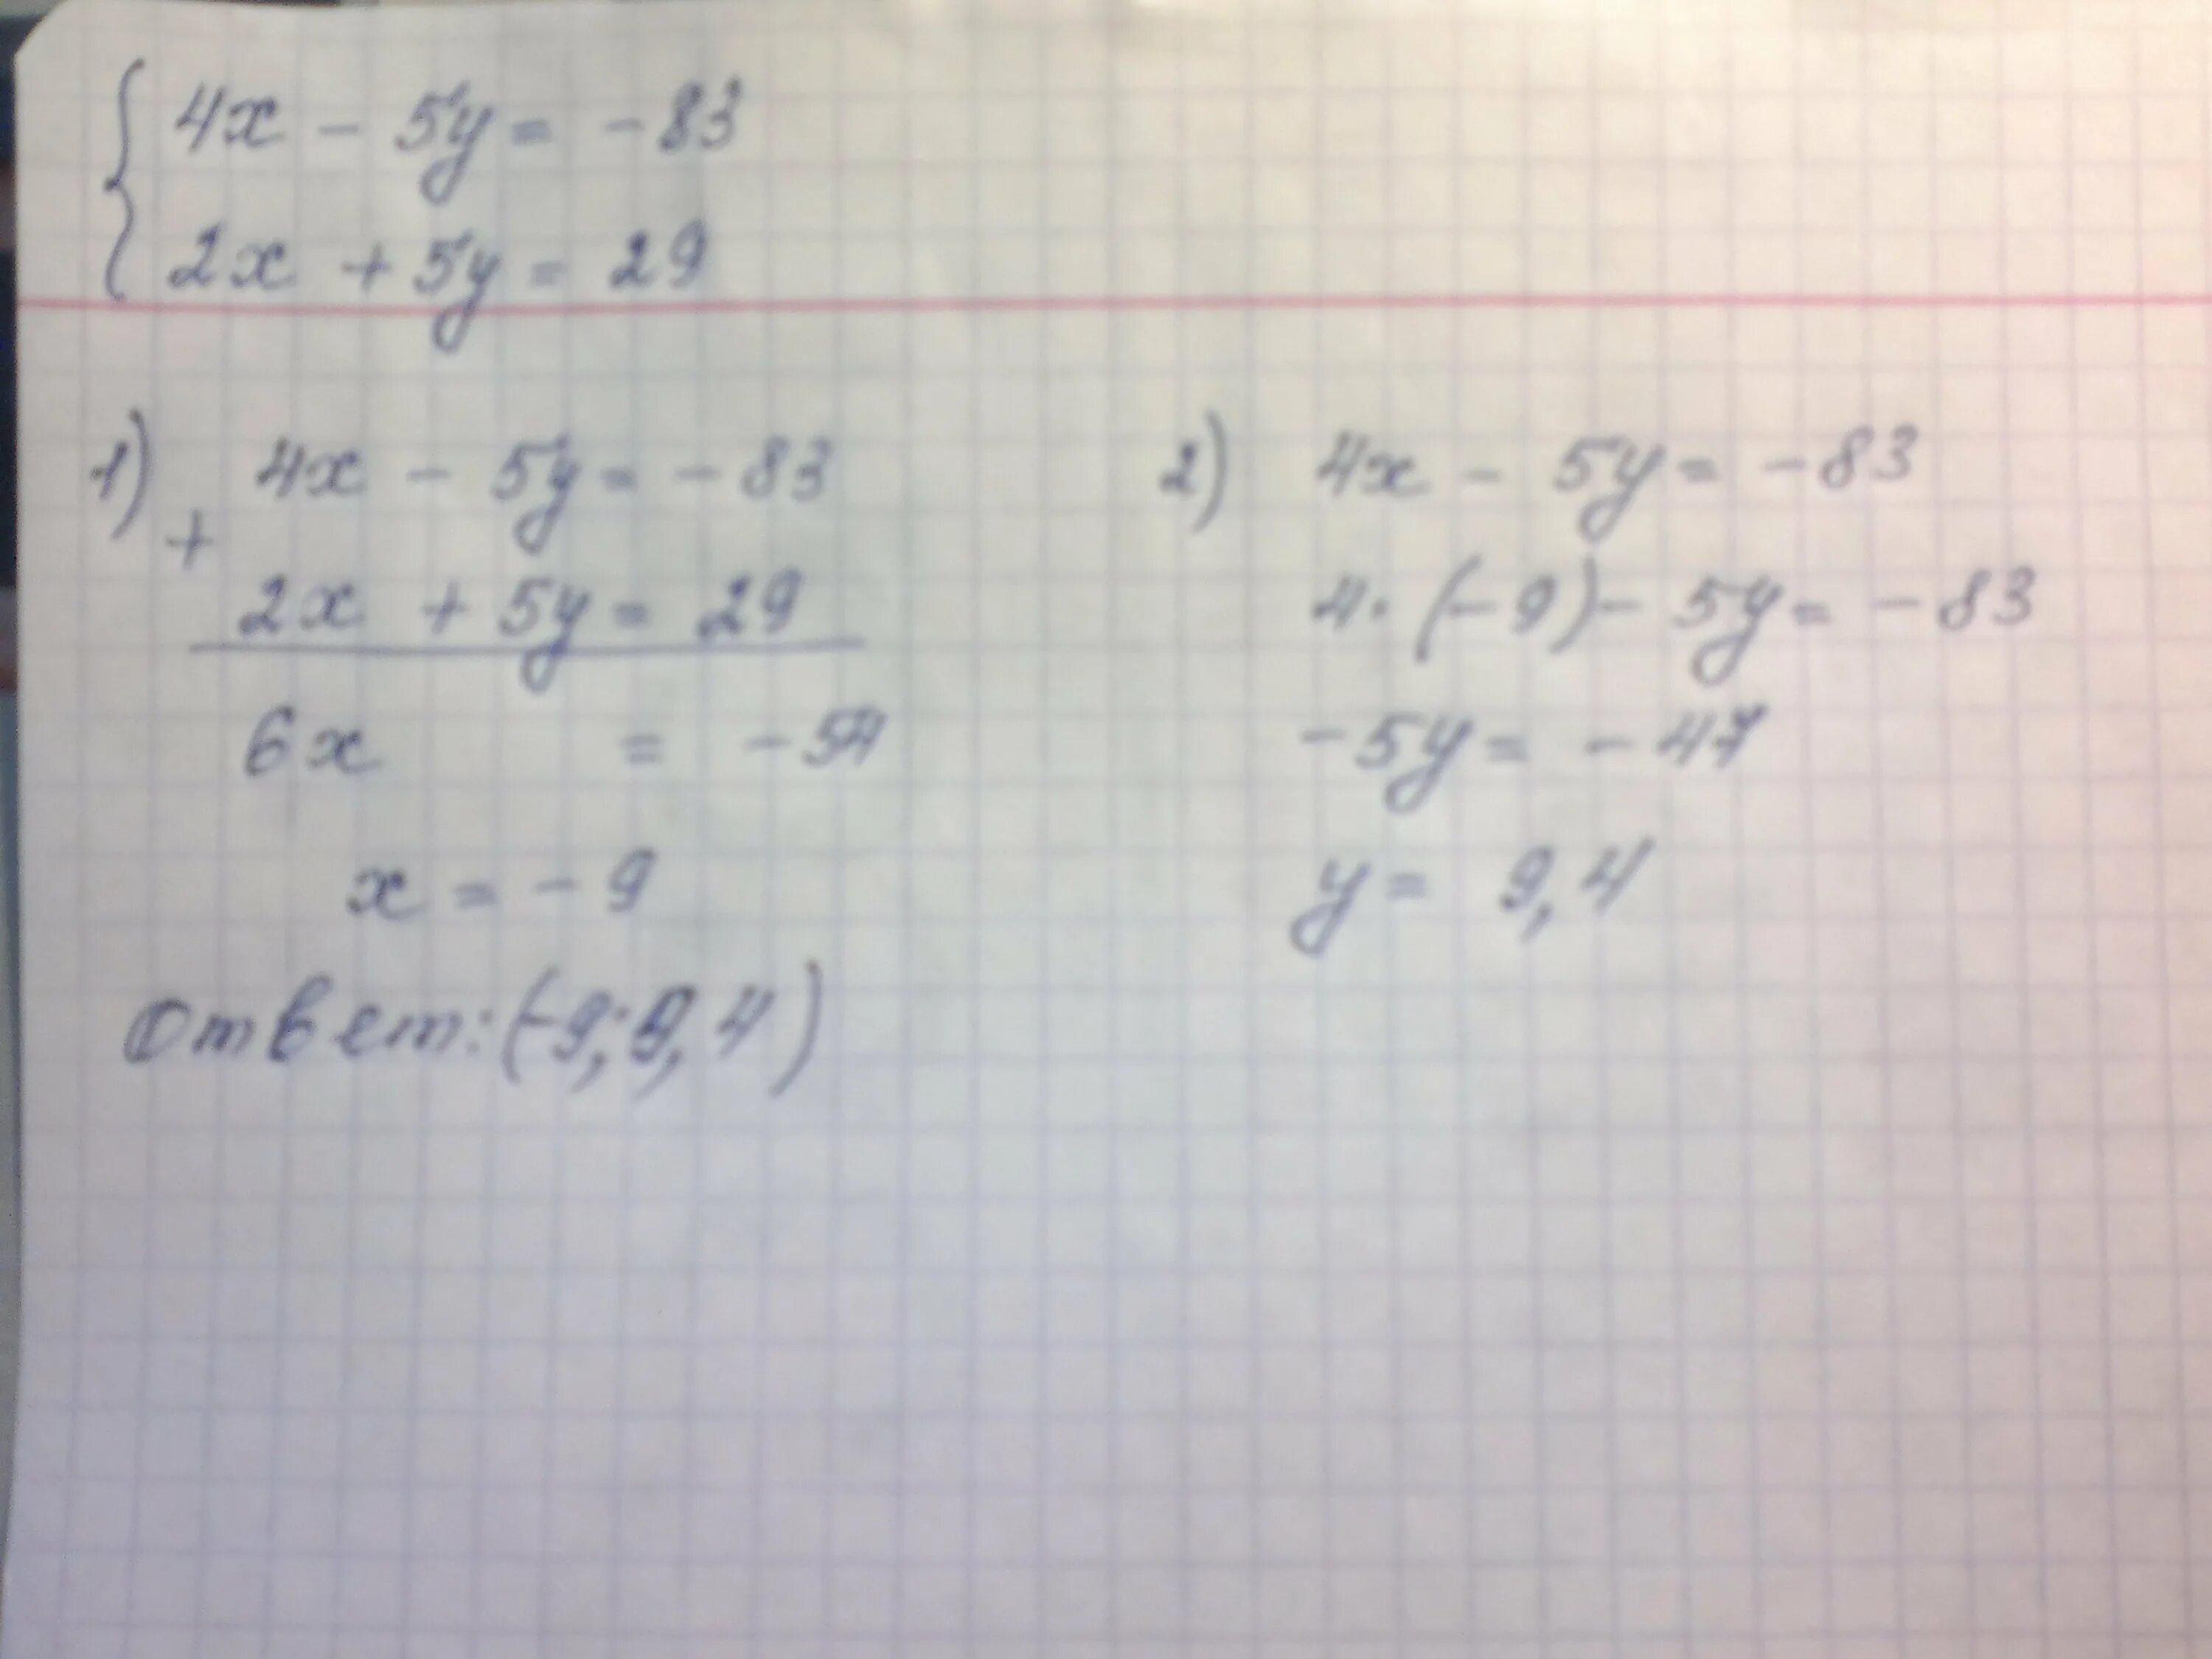 Решить систему способом сложения 2x y 5. Решите методом сложения систему уравнений 4x-5y -83. Решите методом сложения систему уравнений 4x-5y -83 2x+5y 29. Решите методом сложения систему уравнения 4 x. 4x-5y=-83 2x+5y=29.